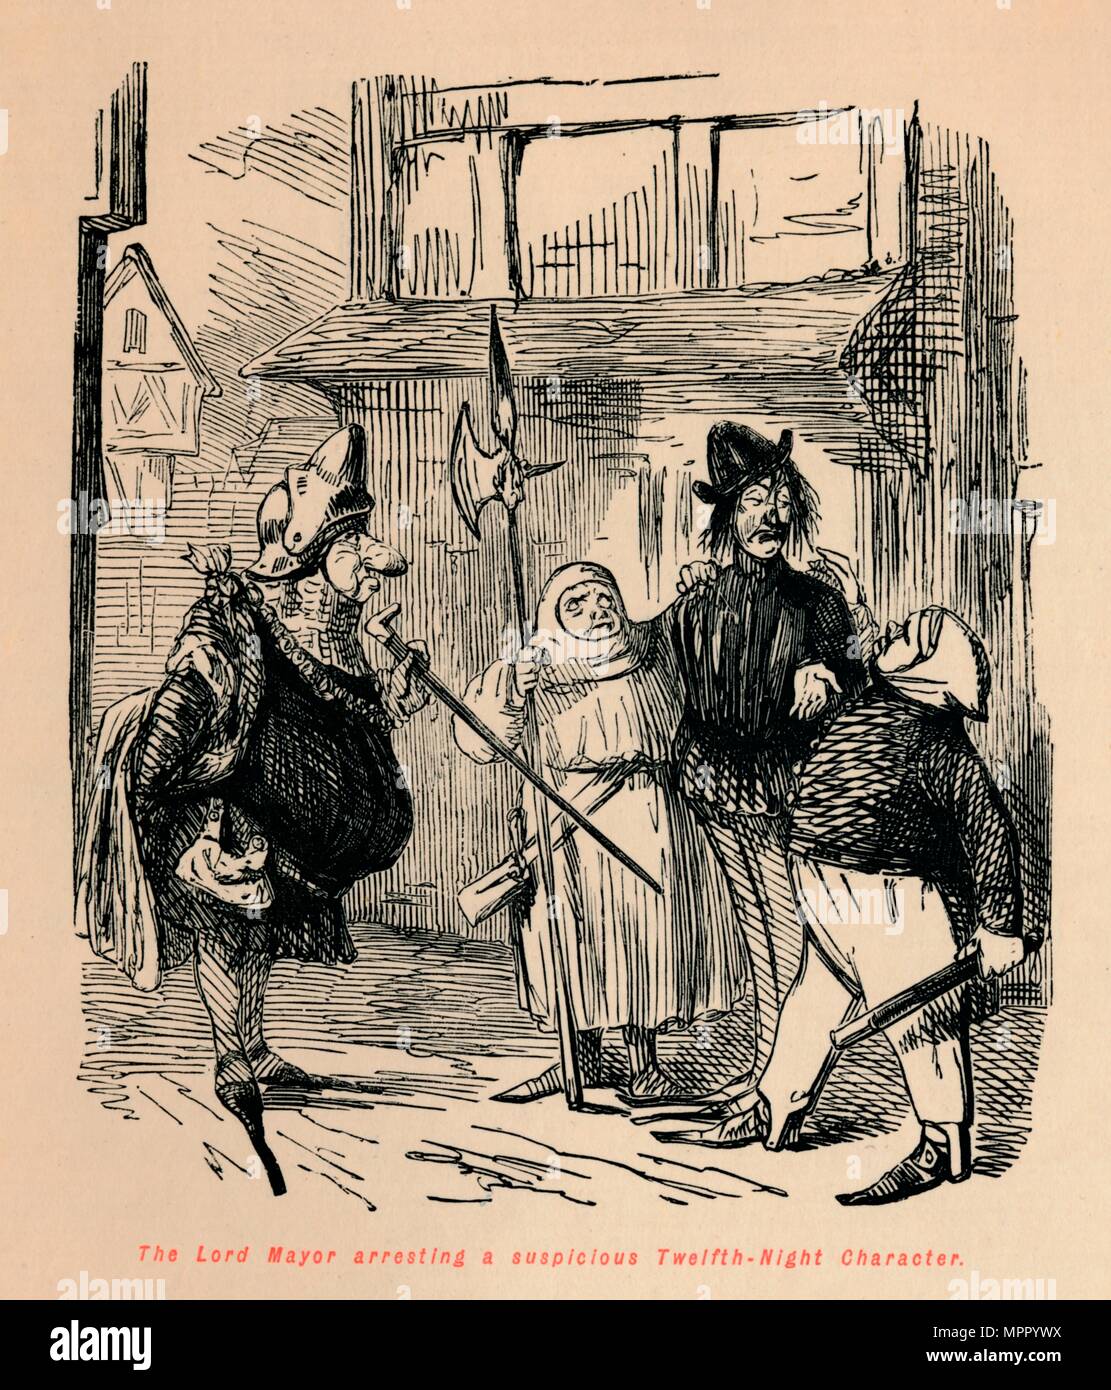 "Der Herr Bürgermeister die Festnahme eines Verdächtigen Twelfth-Night Charakter', c 1860, c 1860). Artist: John Leech. Stockfoto